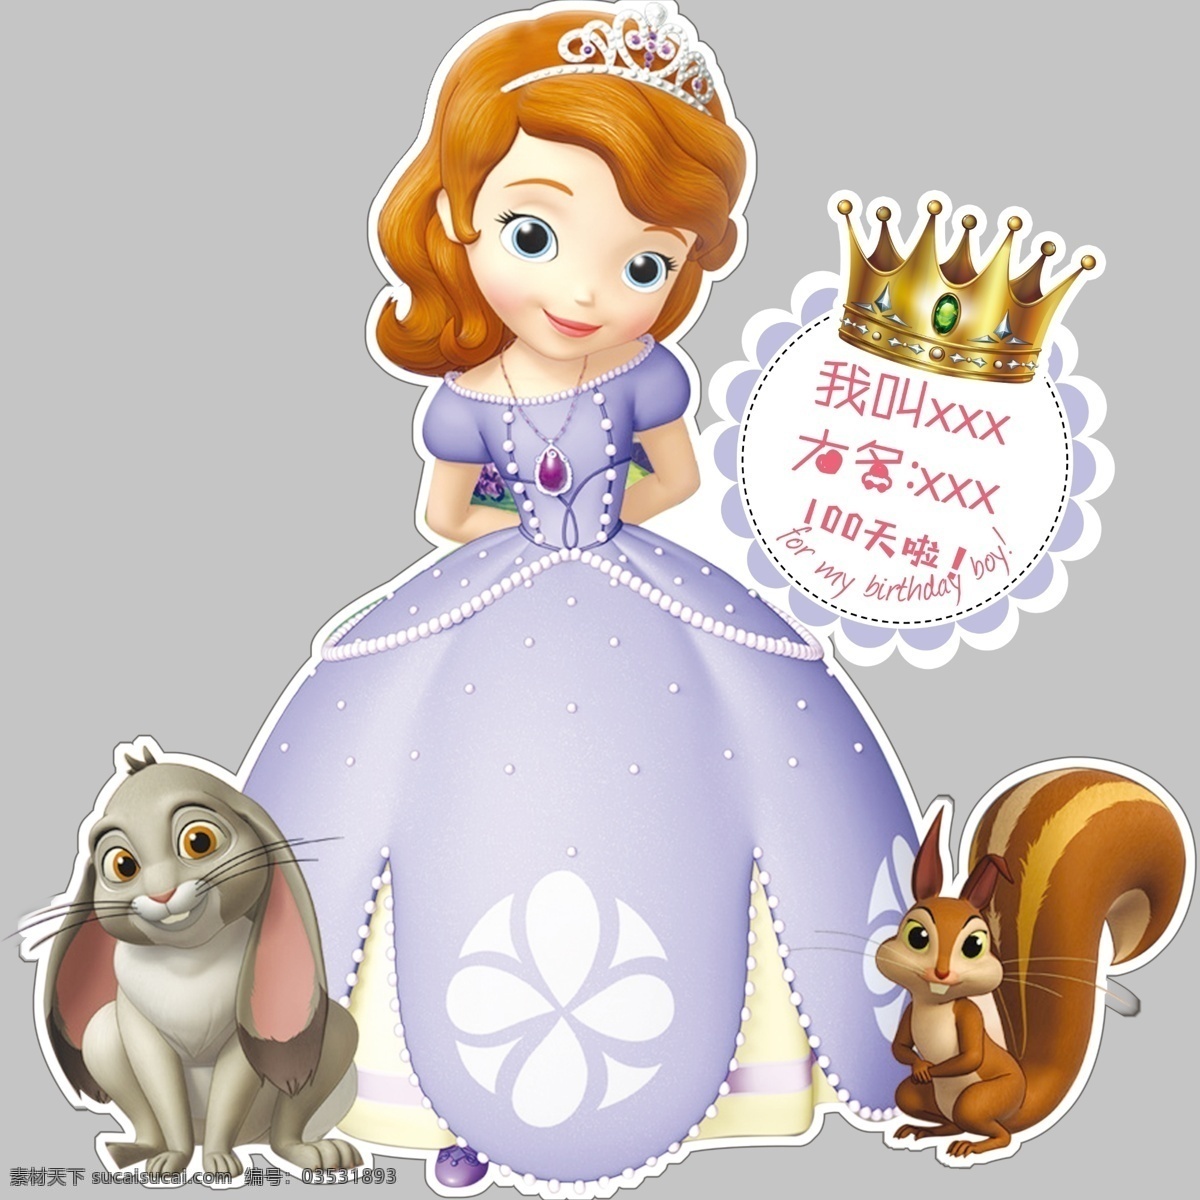 公主 宝宝 生日 宴 苏菲娅公主 卡通人的 女孩子 漂亮女生 公主裙 皇冠 生日贴 人物图库 儿童幼儿